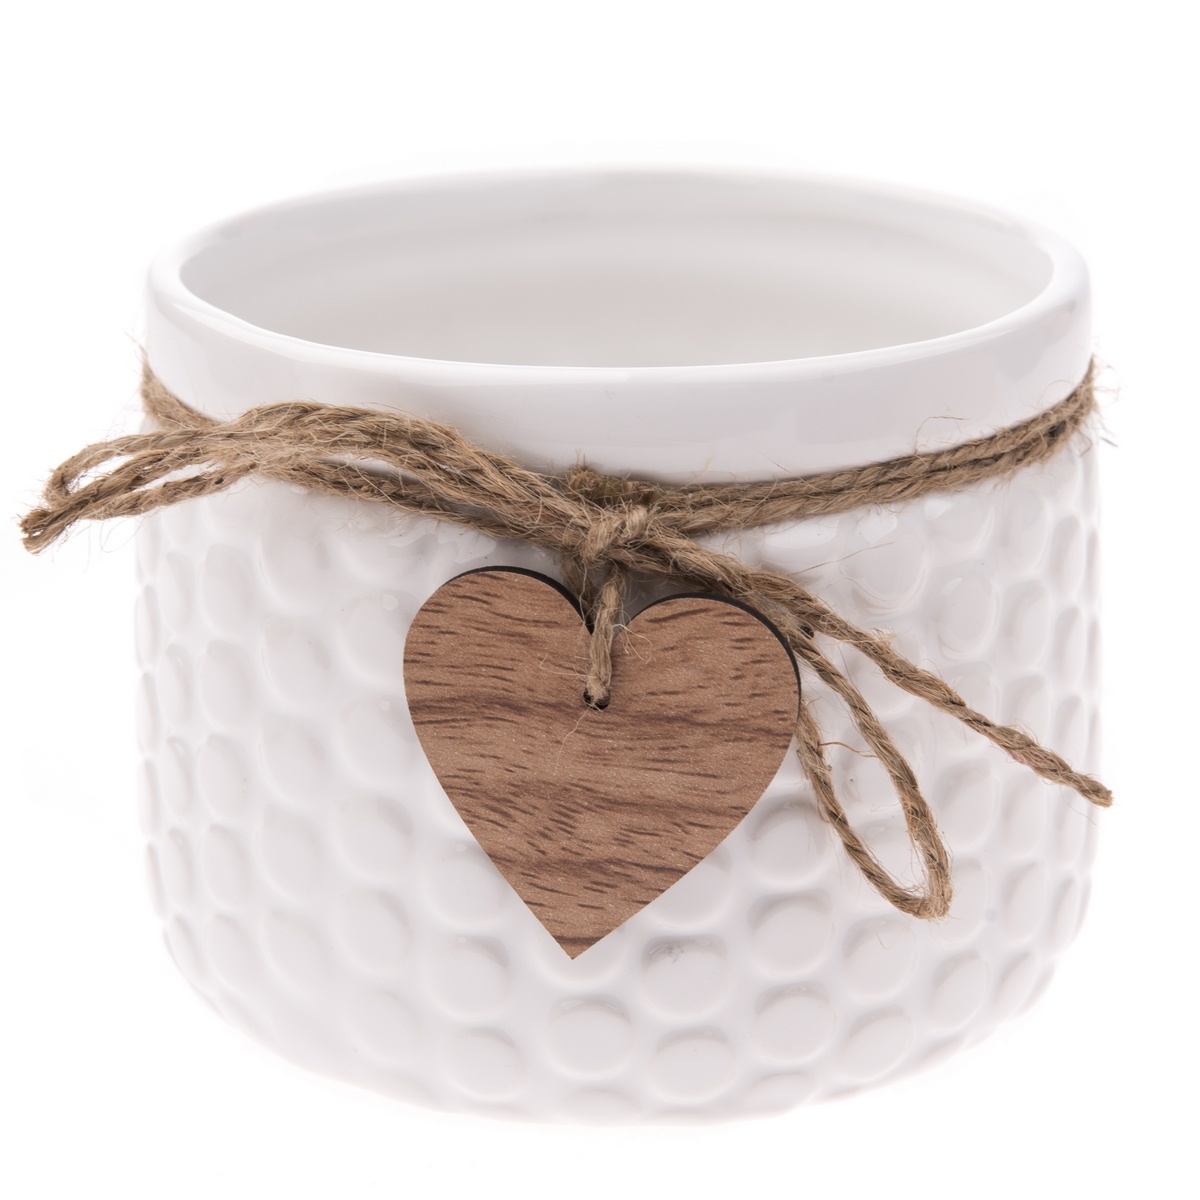 Poza Recipient ceramic ghiveci Heart, alb, 12,5x 9,5 cm